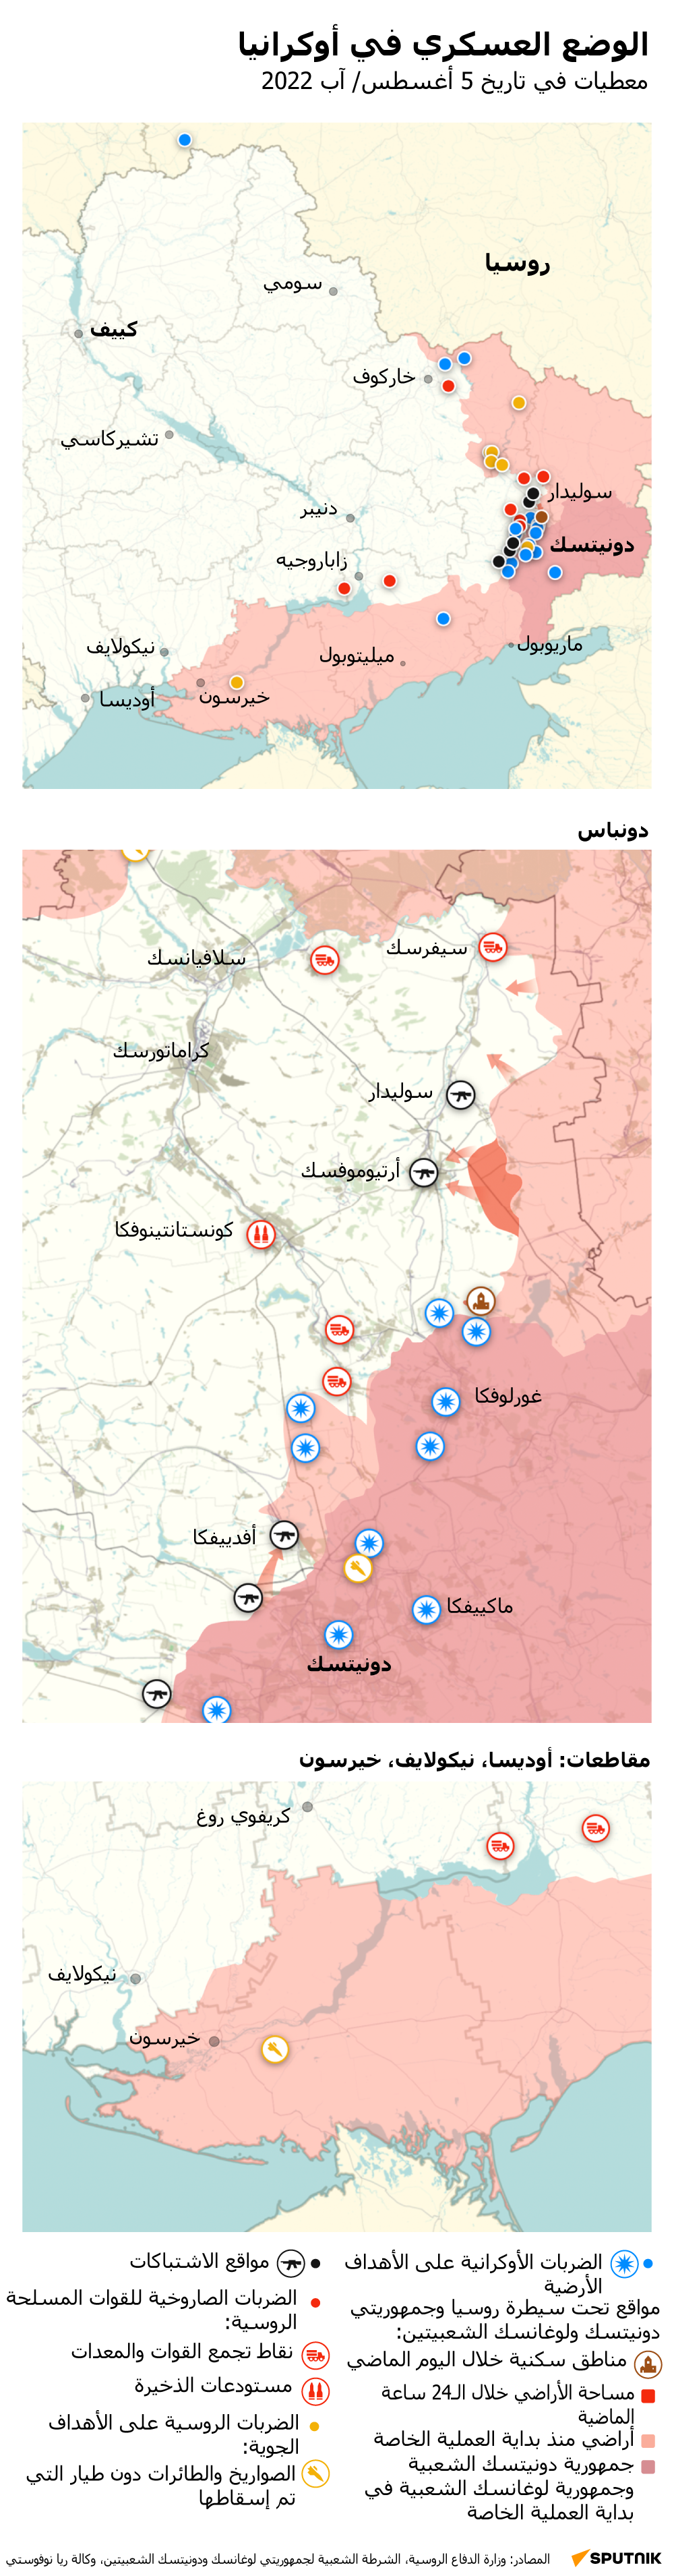 خريطة العملية العسكرية الروسية الخاصة في أوكرانيا ليوم 5 أغسطس 2022 - سبوتنيك عربي